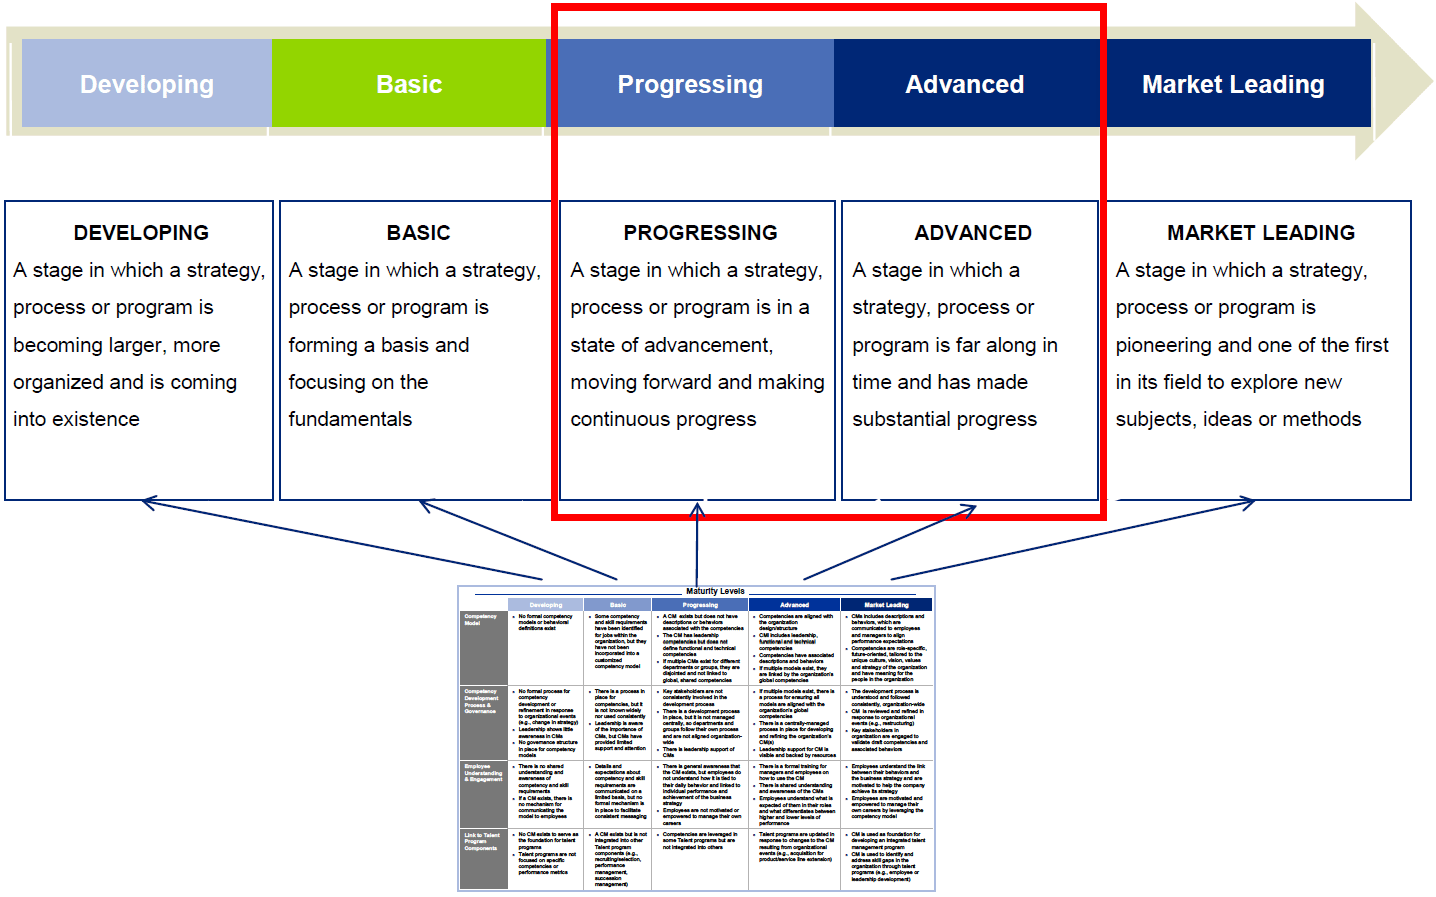 Table taken from the Deloitte Talent Maturity Model